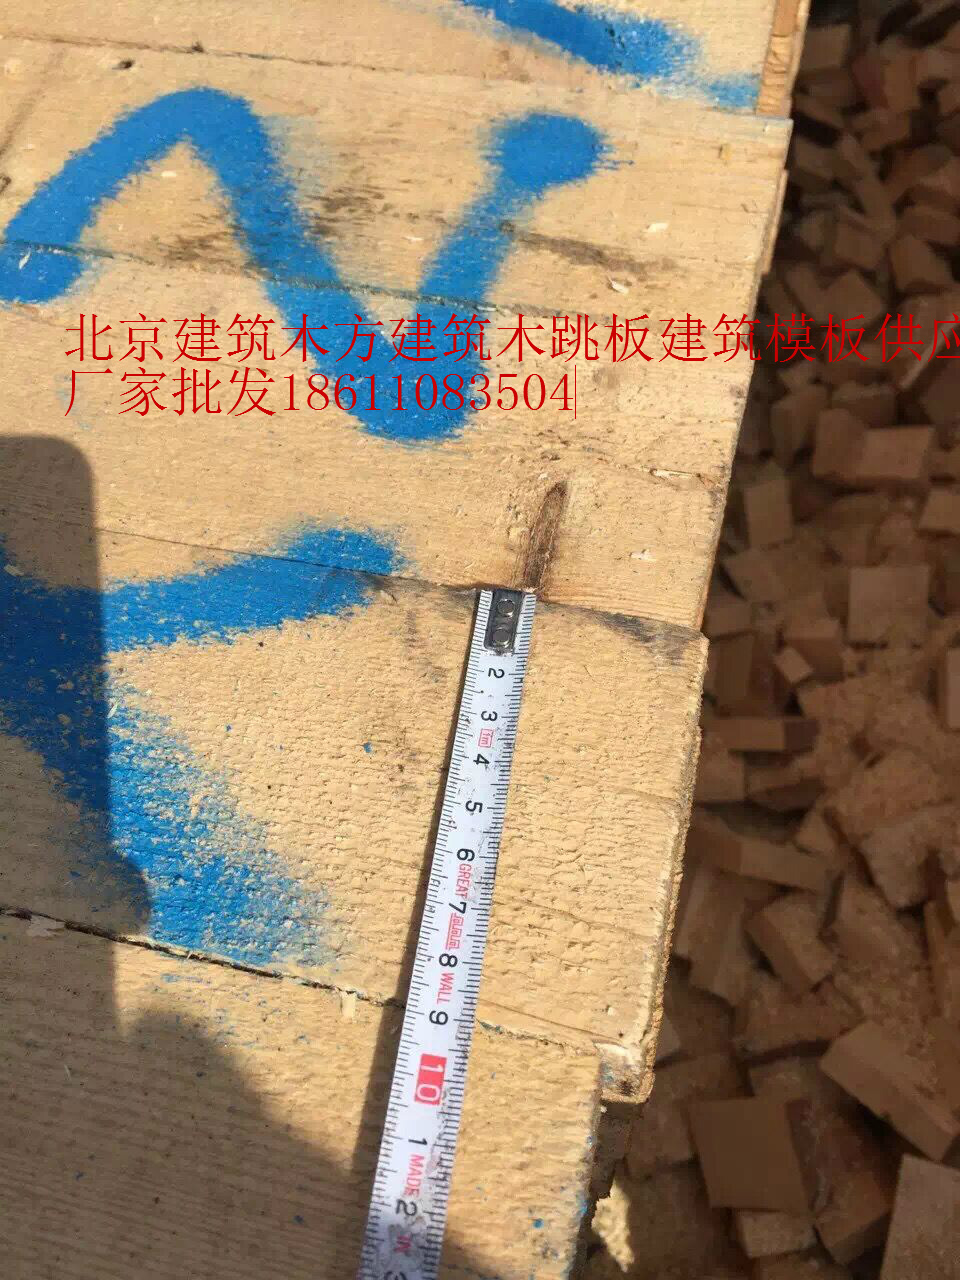 北京市清水模板批发建筑木方厂家北京批发清水模板批发建筑木方